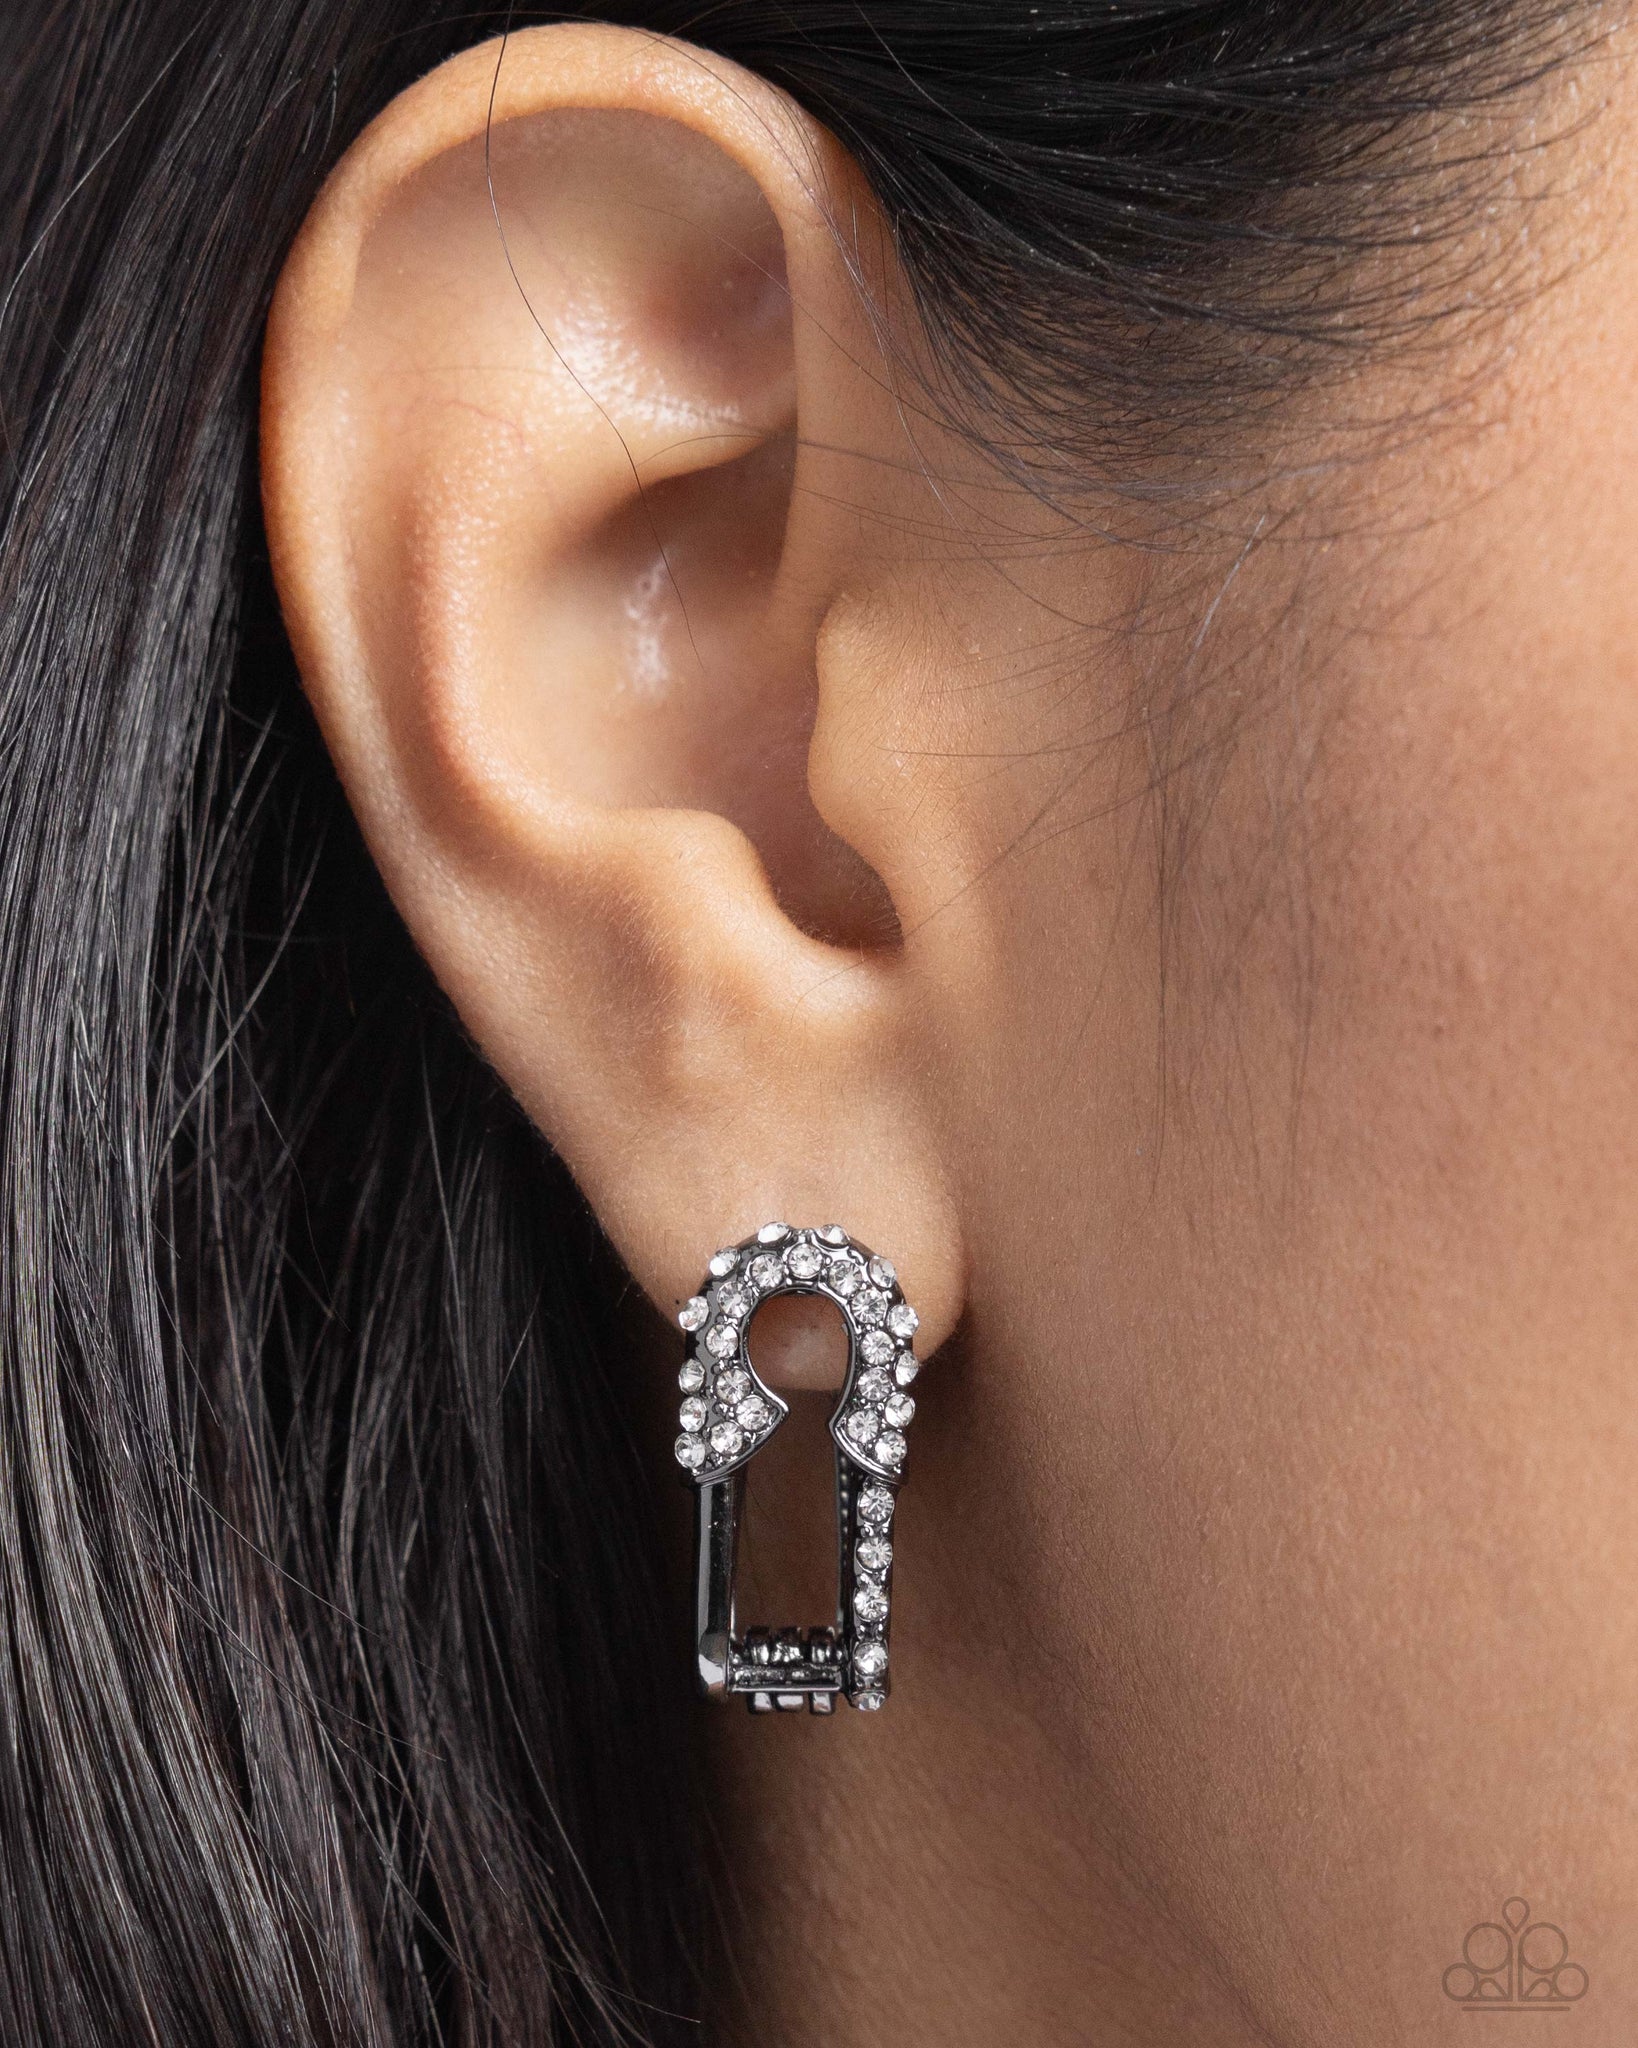 Safety Pin Secret Earring (Black, White)